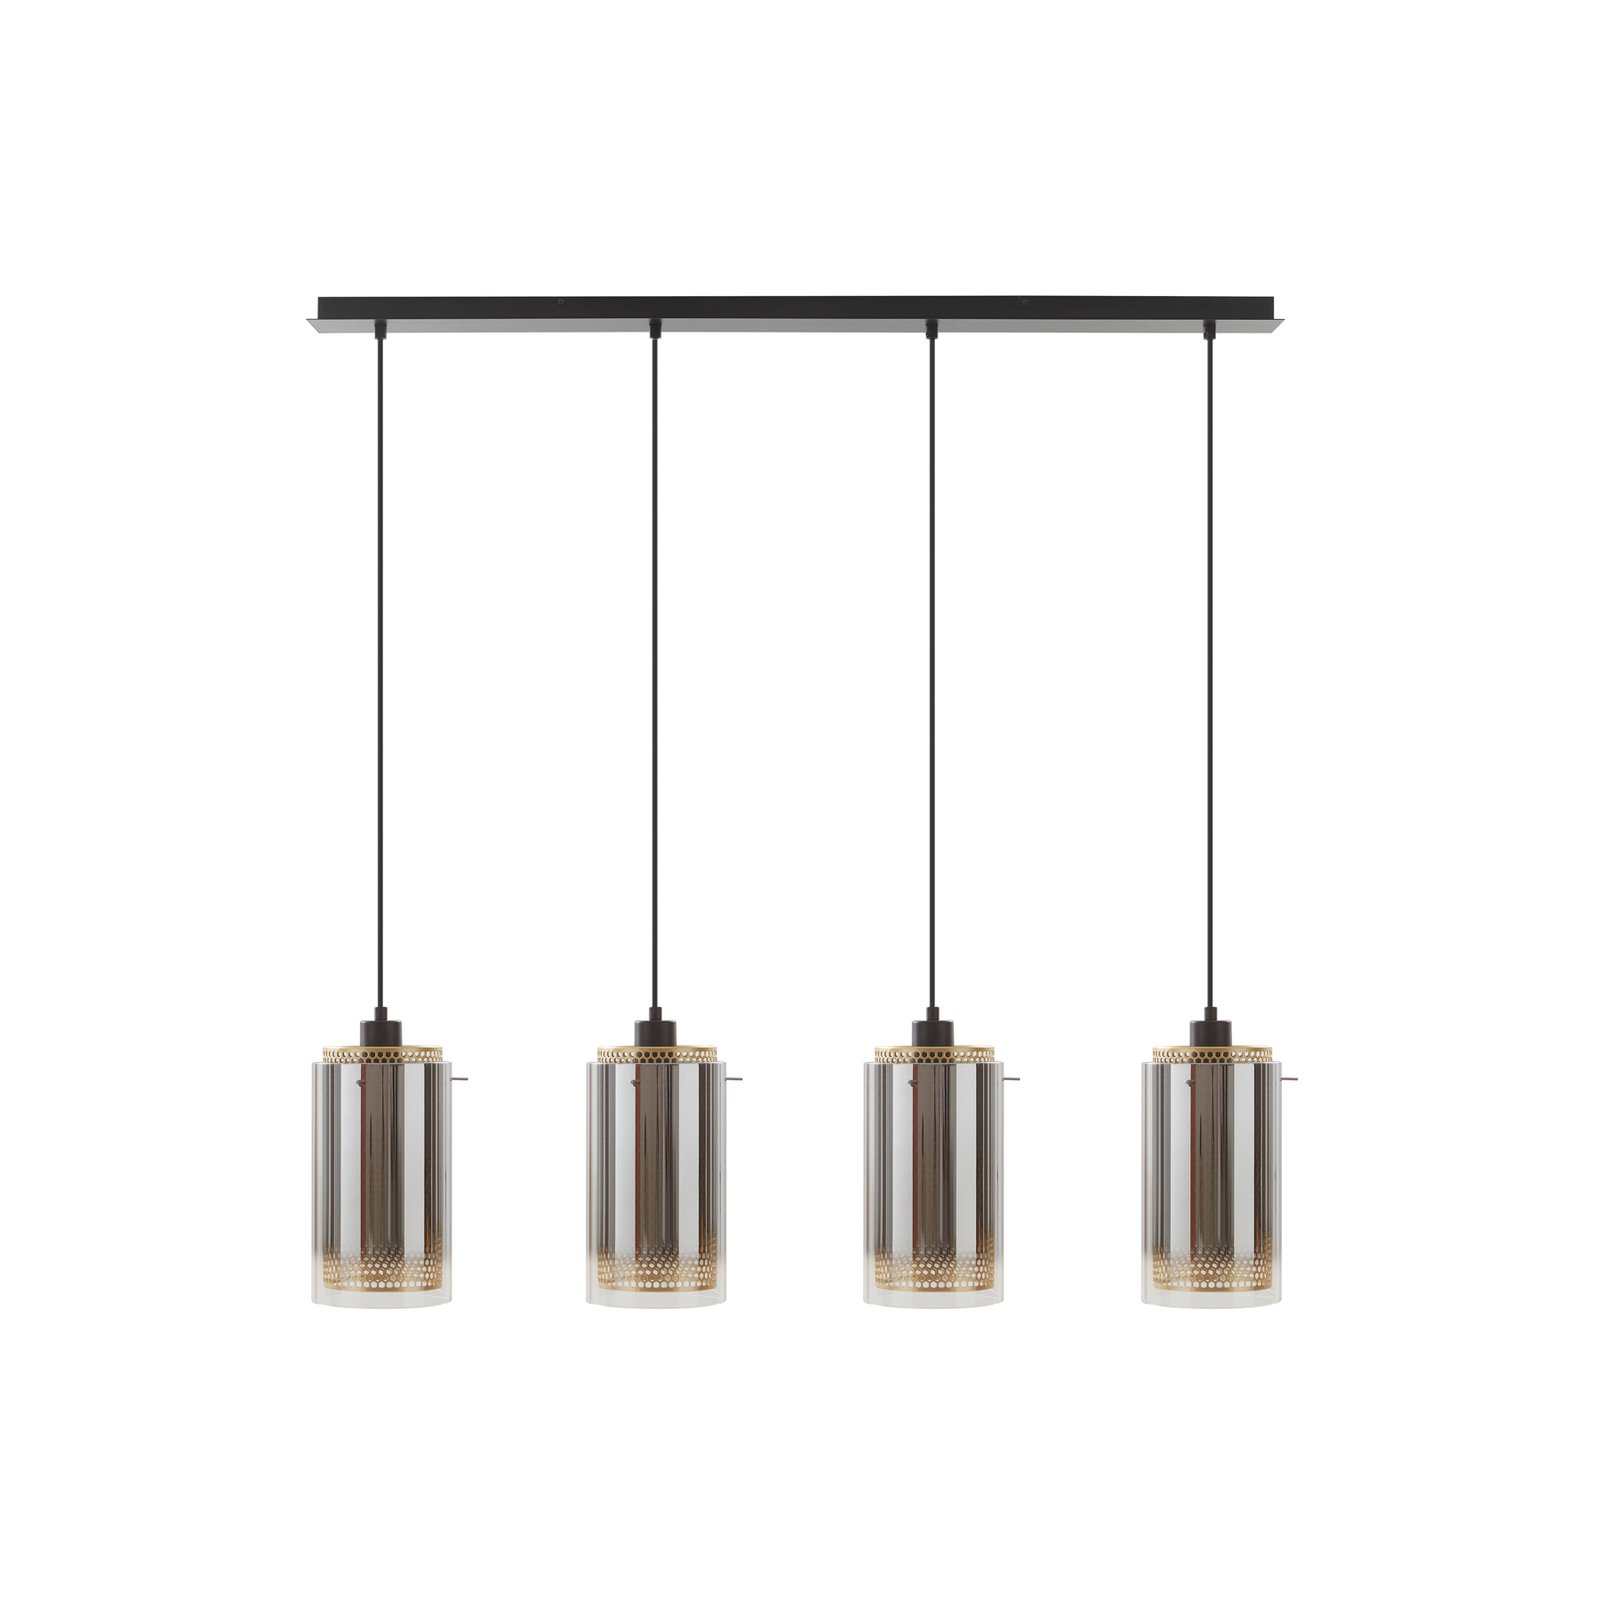 Lucande hanglamp Sterzy, 105 cm lang, grijs, glas, 4-lamps.